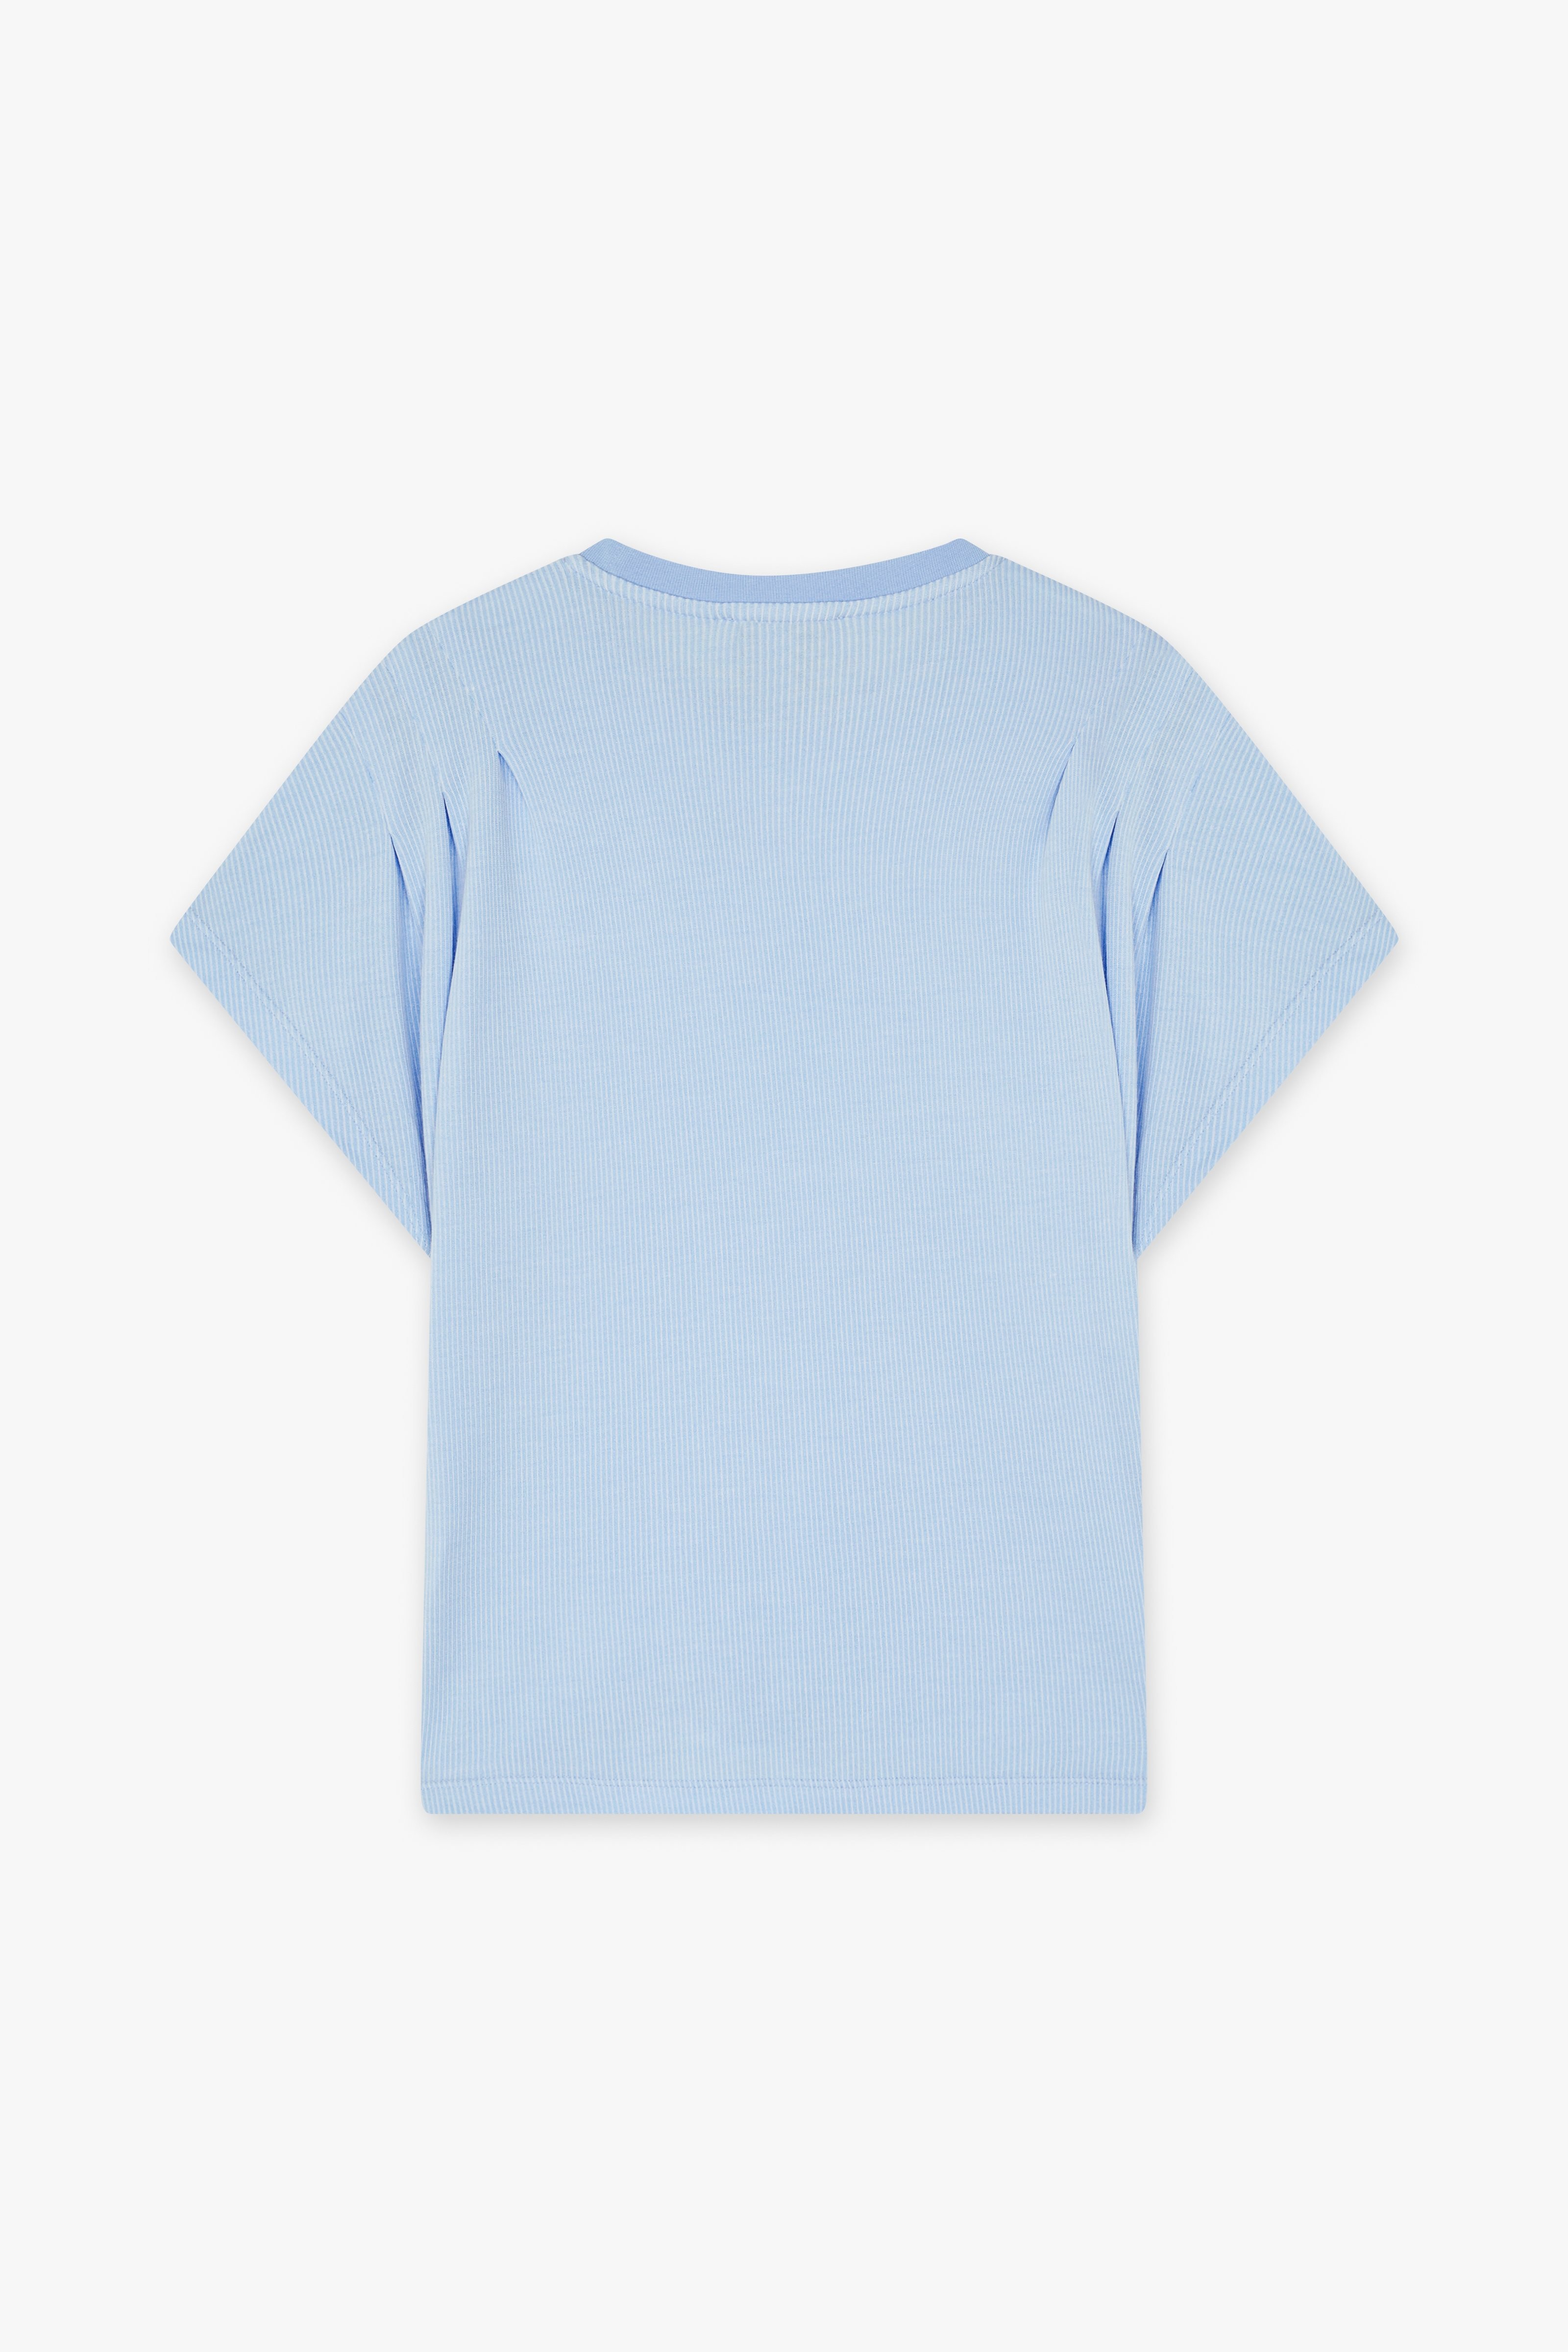 CKS Dames - JAZZY - t-shirt short sleeves - light blue